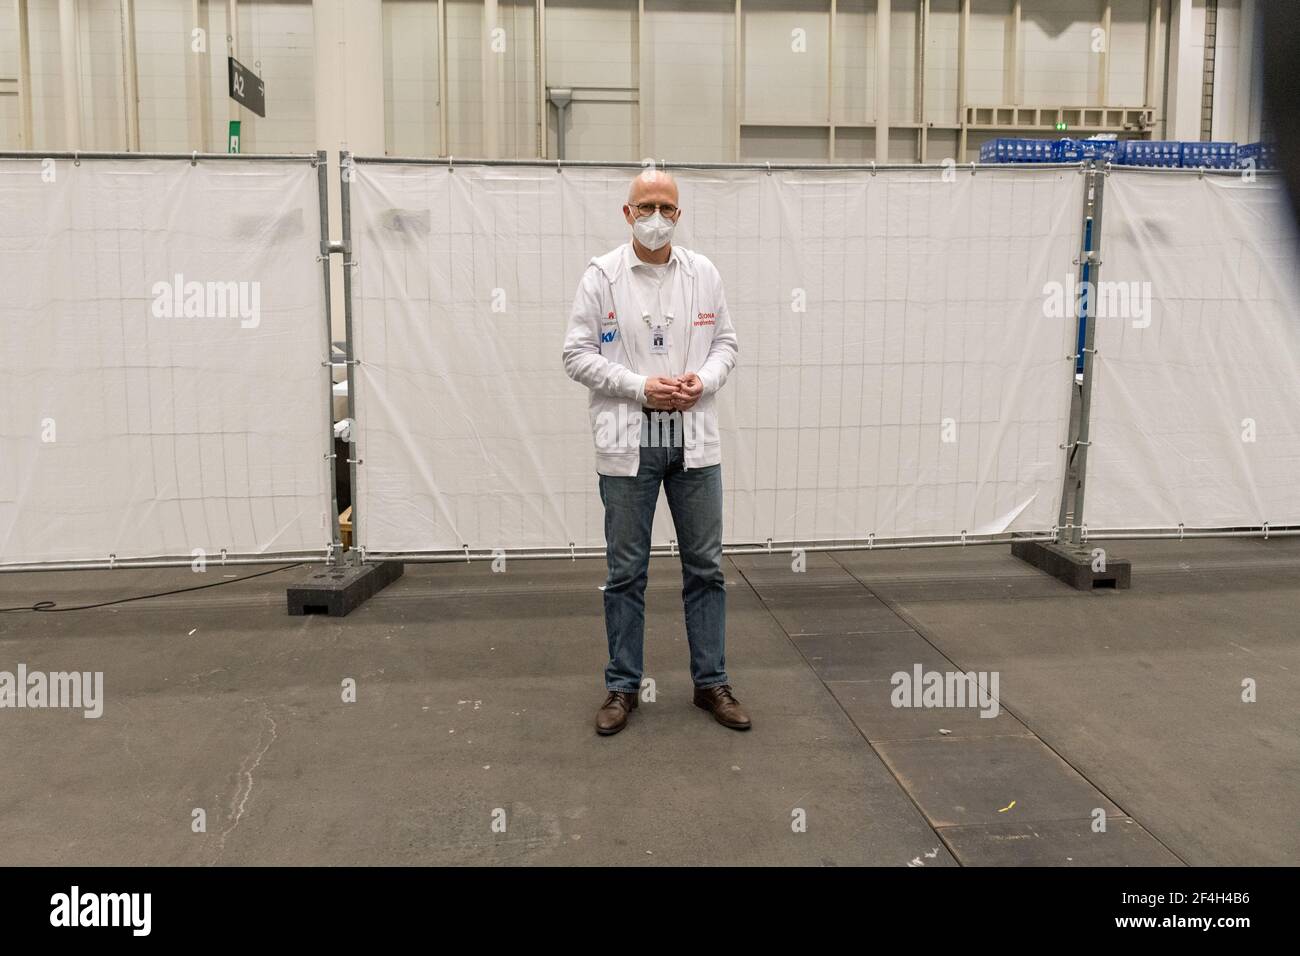 Hamburgs Bürgermeister Peter Tschentscher (SPD) – vor seinem Wechsel in den Senat Laborarzt am Universitätsklinikum Hamburg-Eppendorf (UKE) – arbeitet Stock Photo